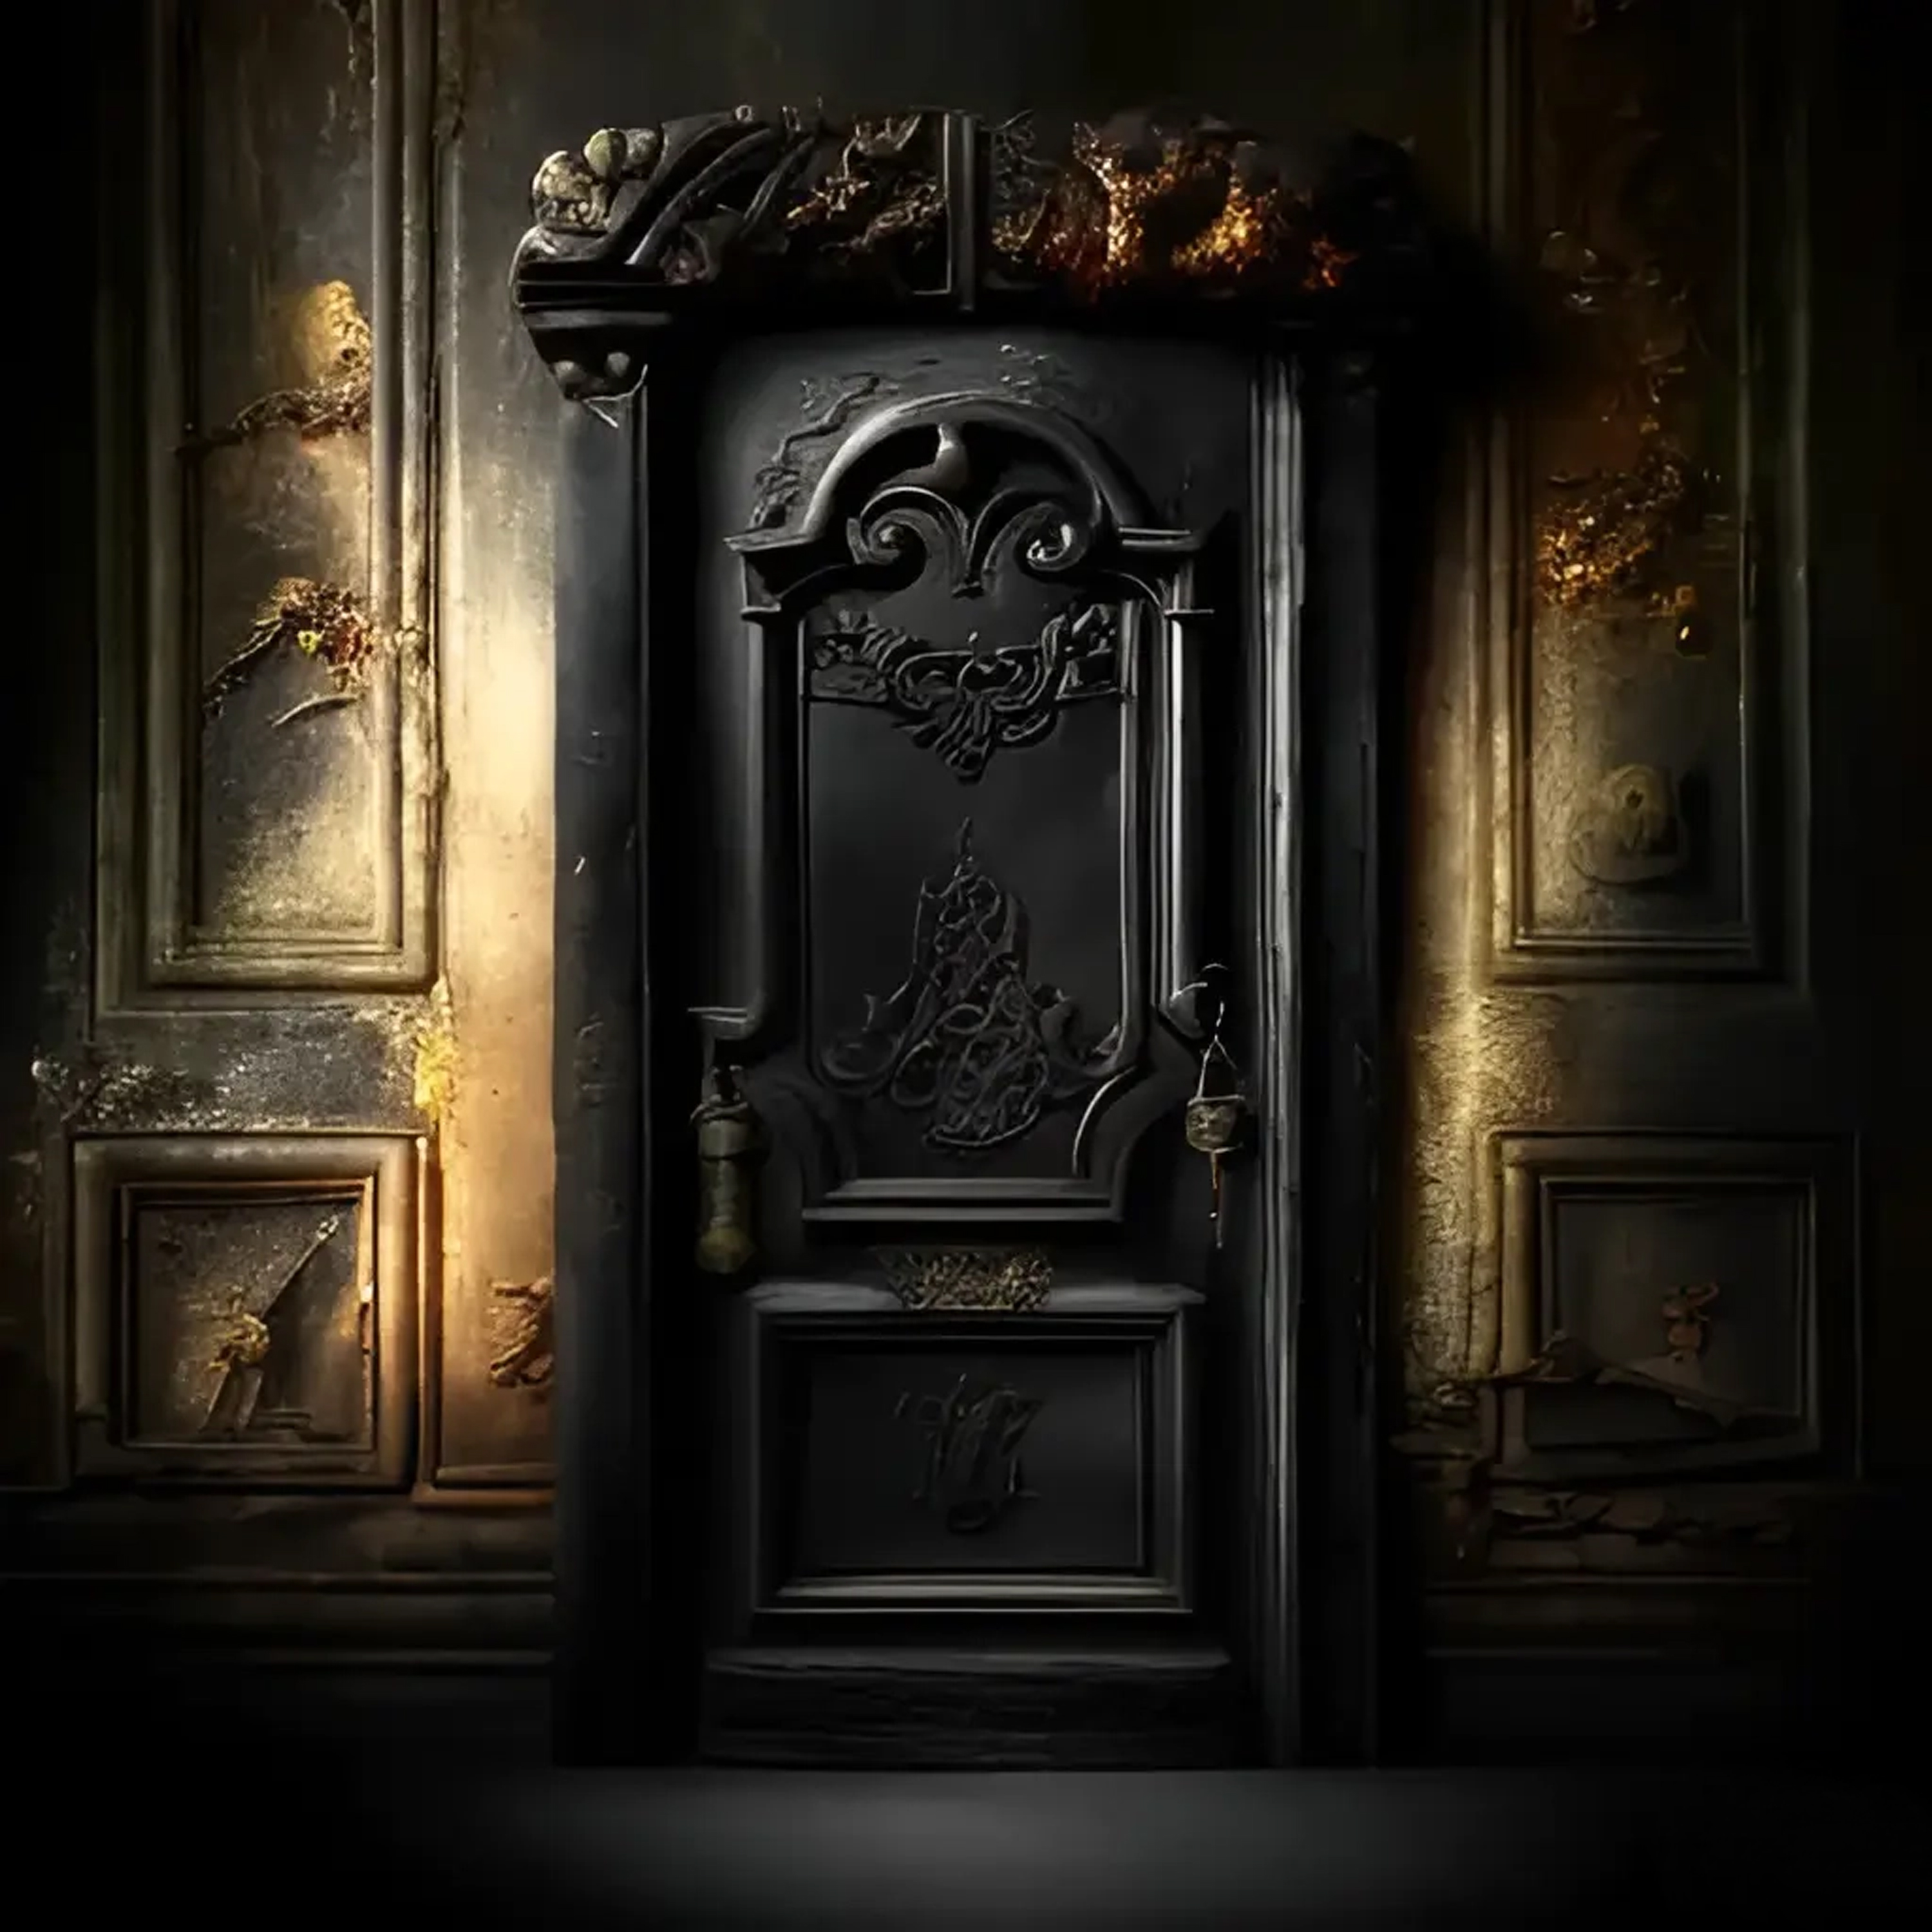 IX - The door of XNLKX